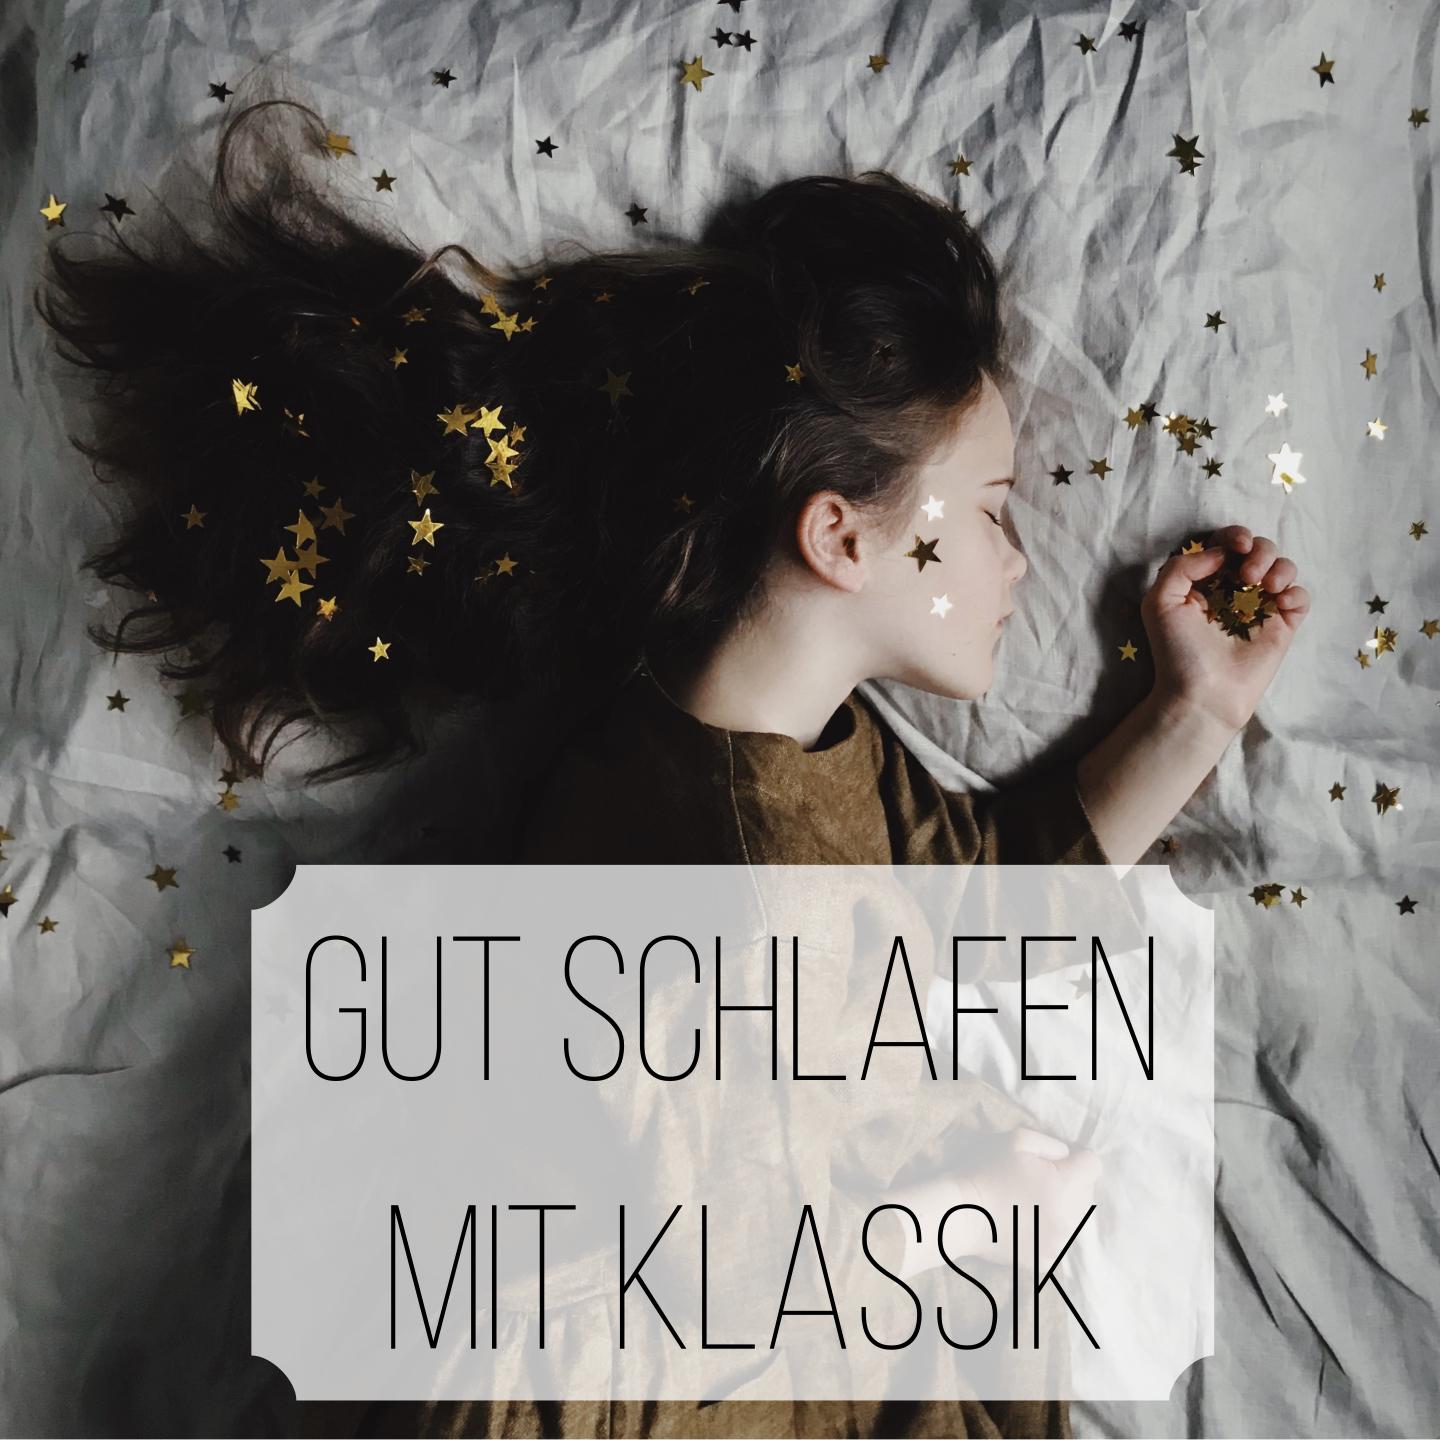 Gut Schlafen mit Klassik专辑